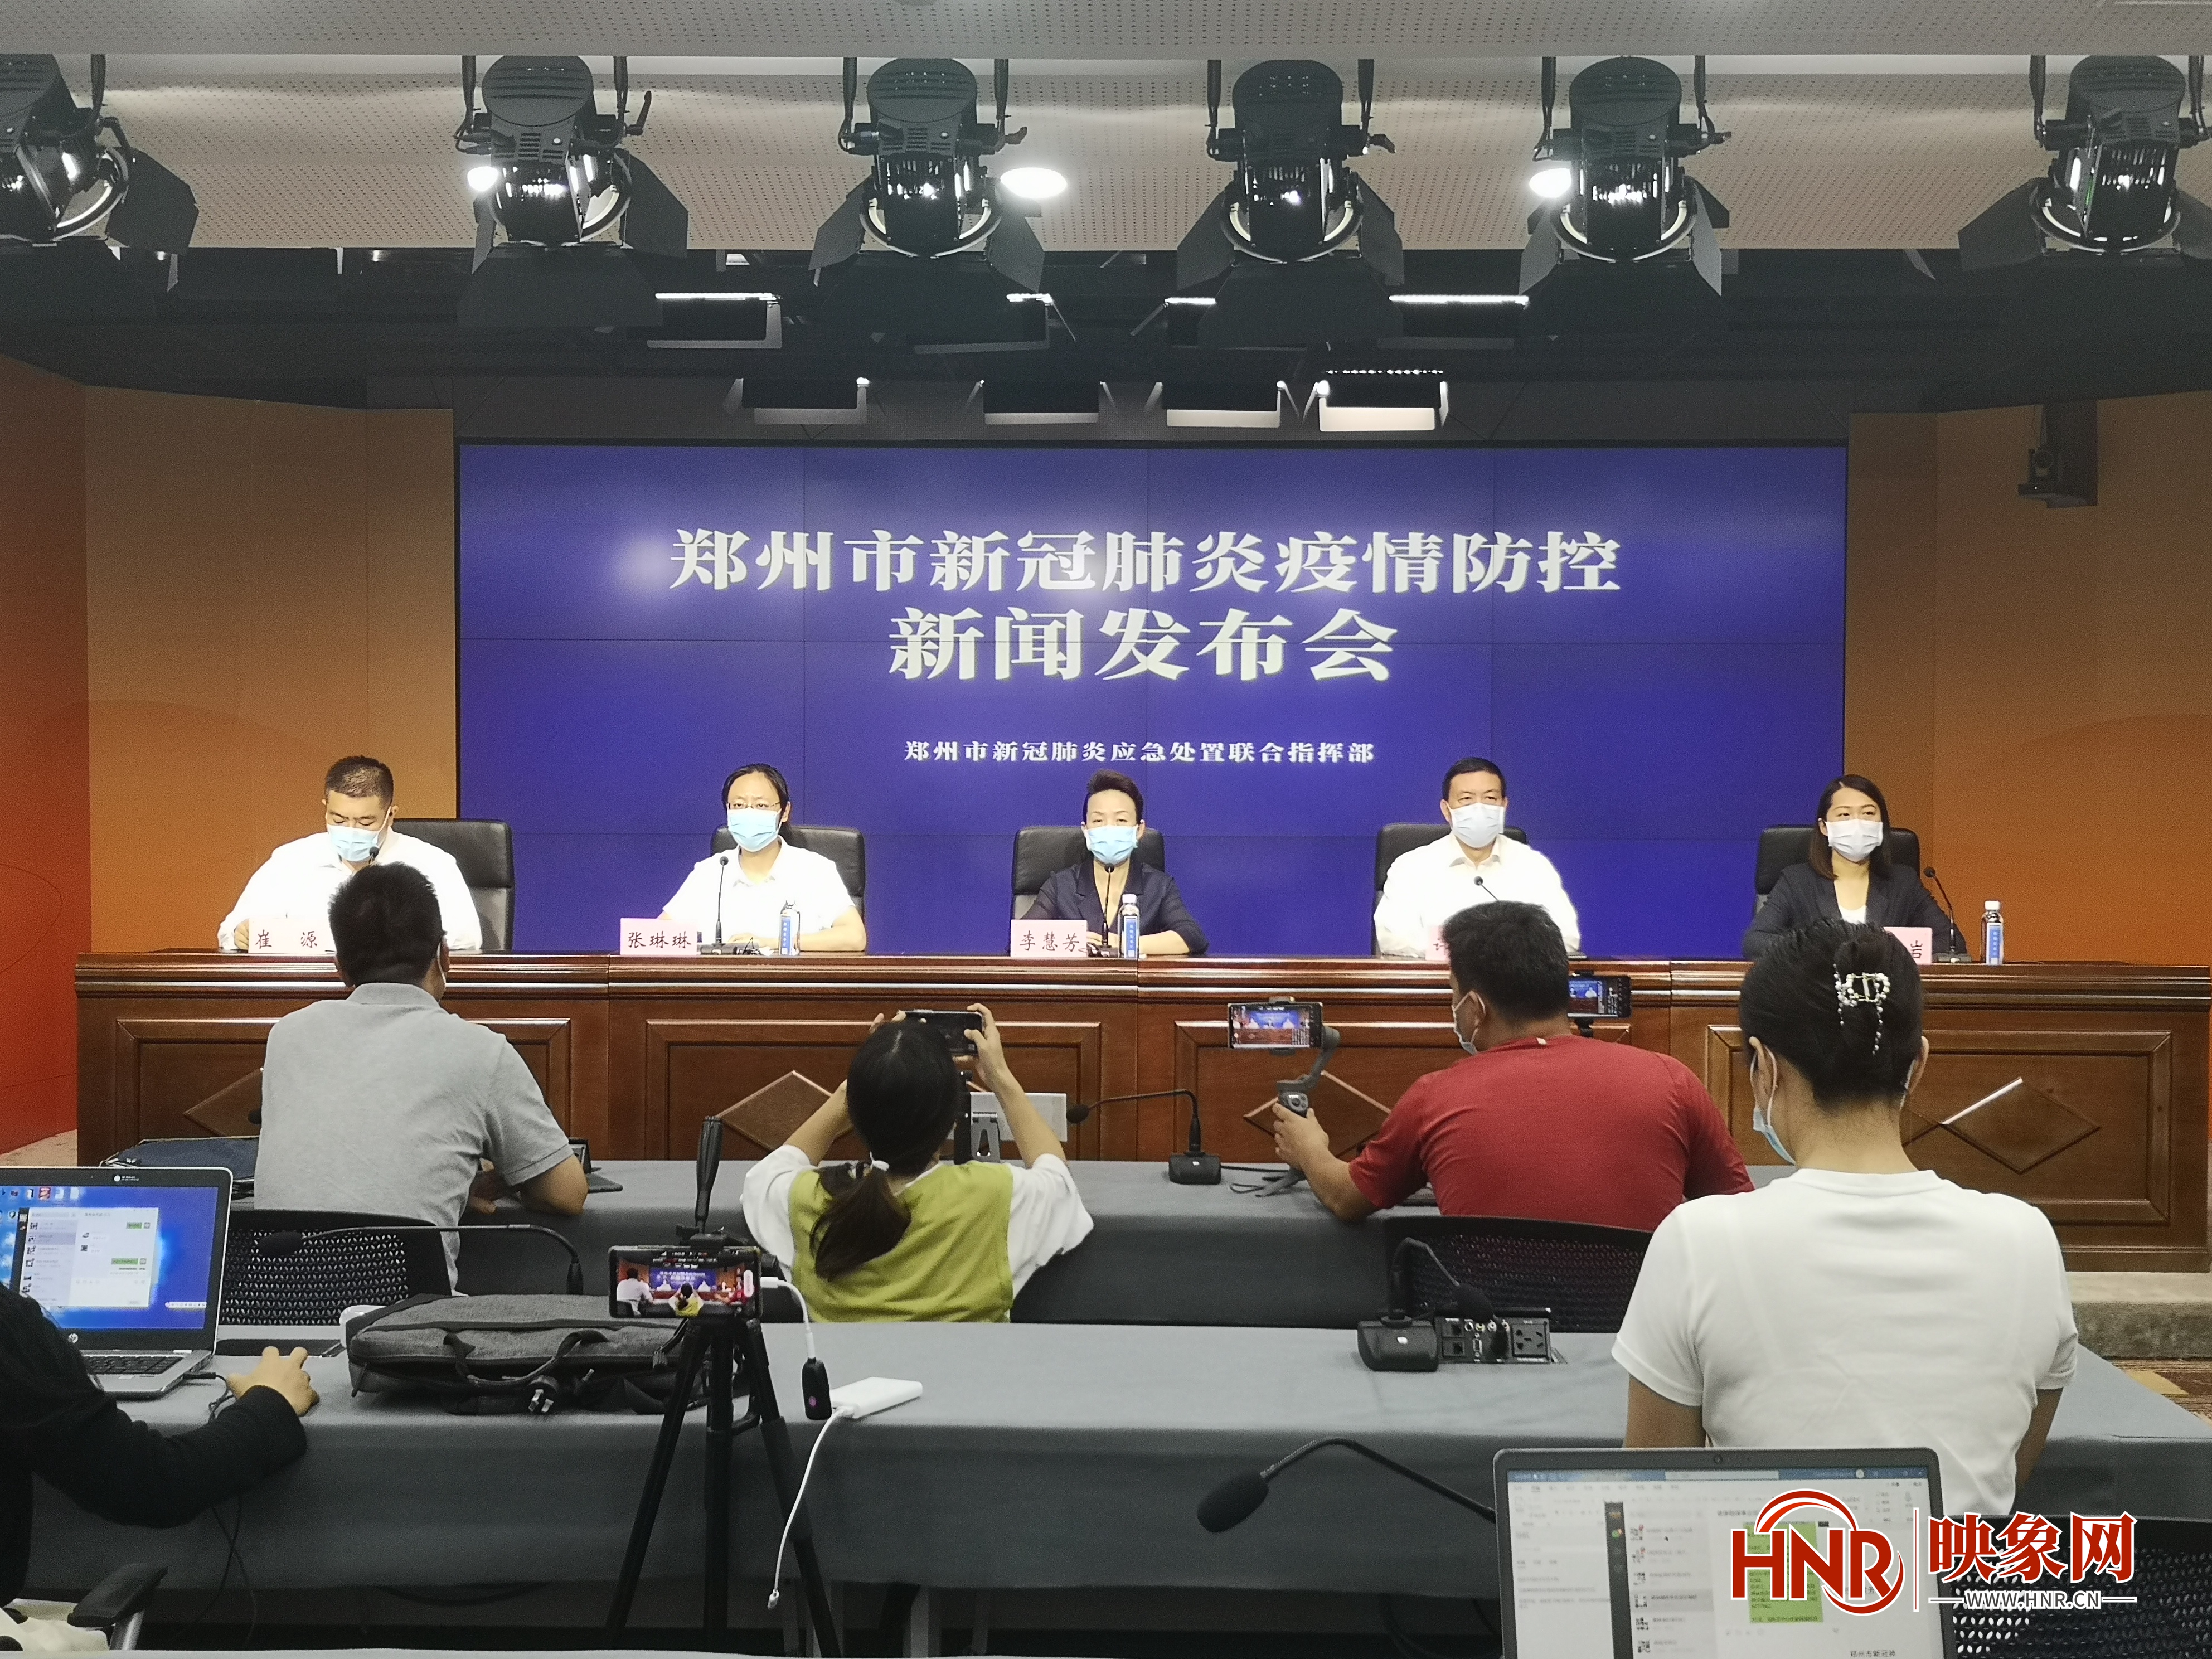 昨日郑州公布新增9例阳性病例活动轨迹 8例均系对高风险人群集中隔离后核酸检测发现